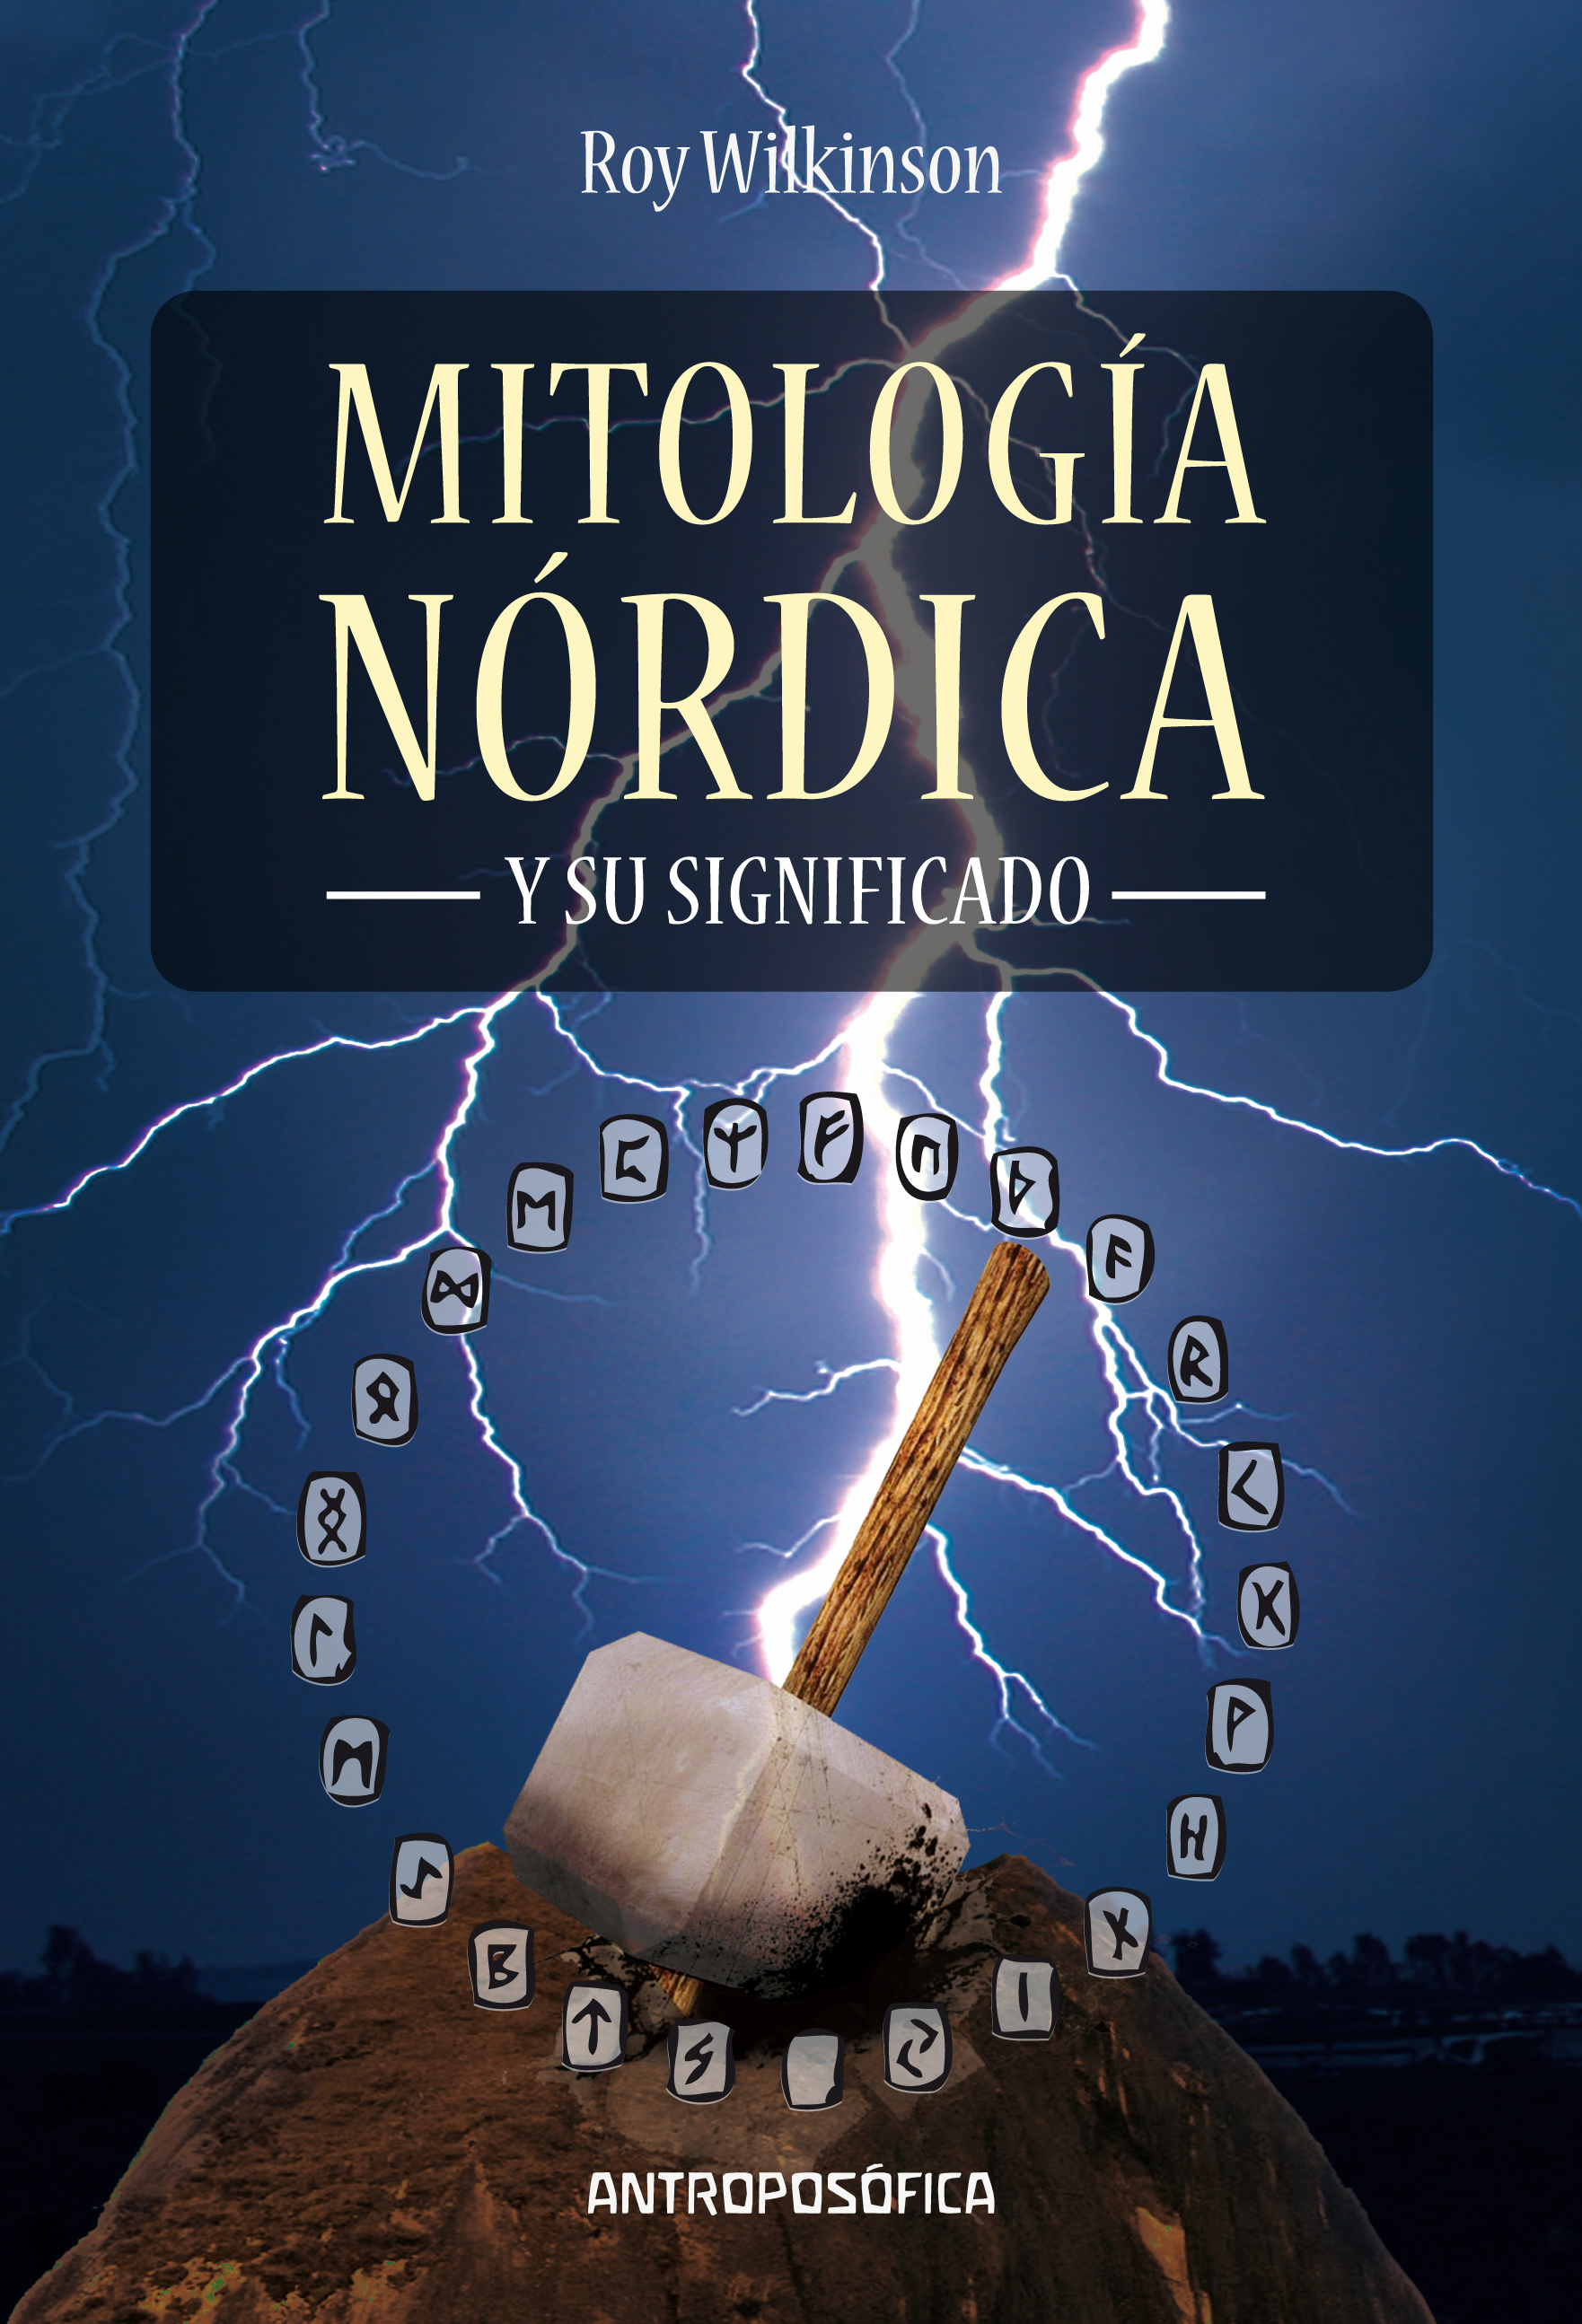 
            Mitología nórdica 